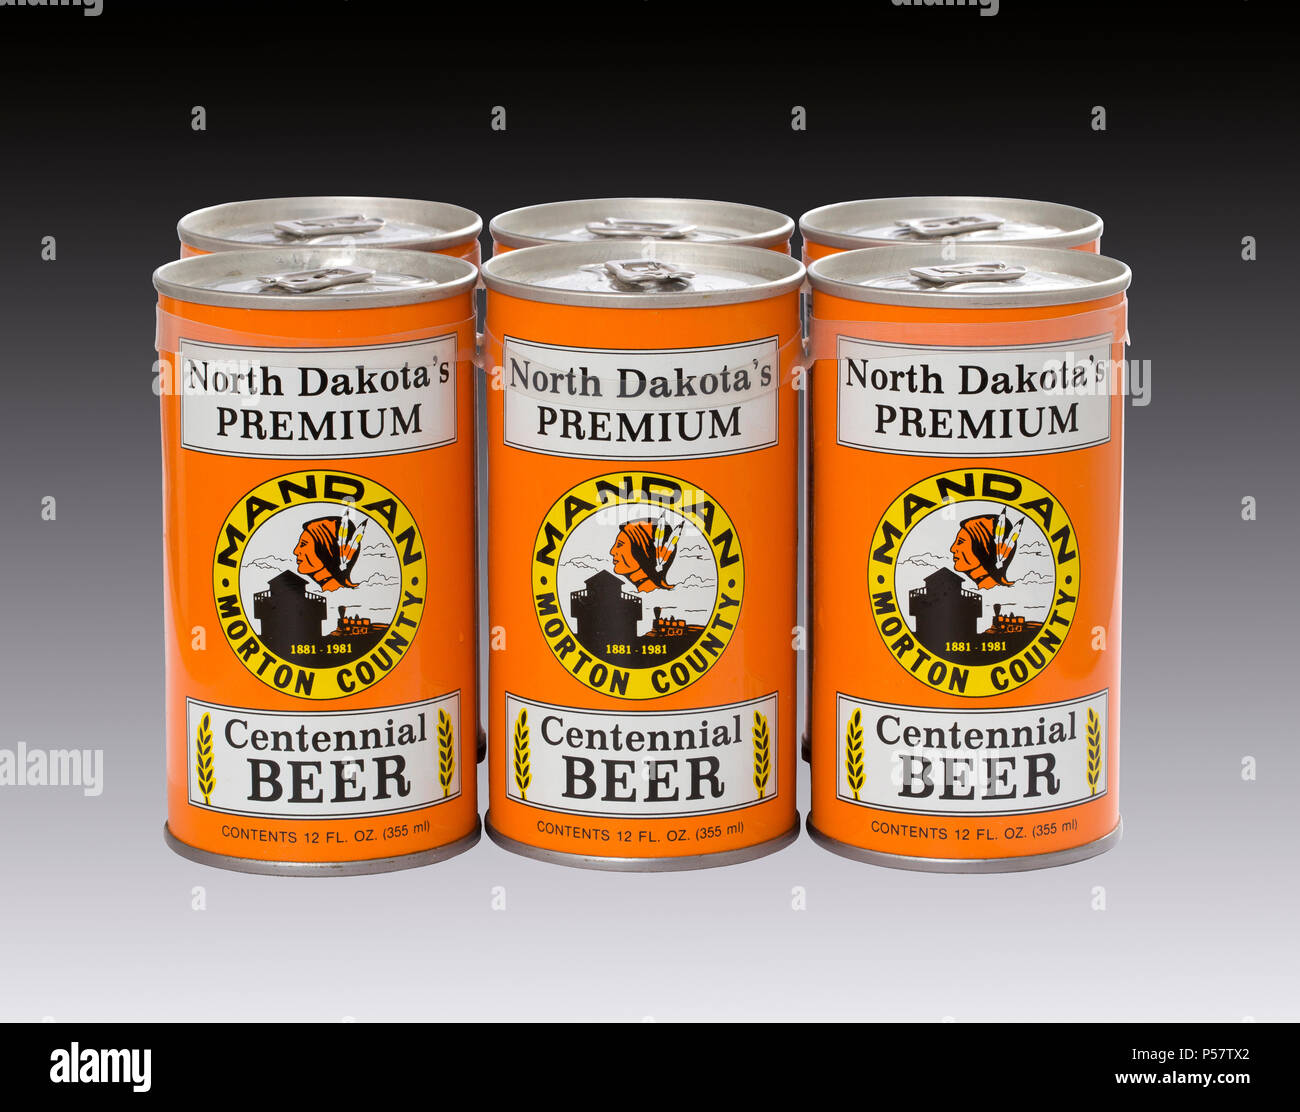 Un pack de 6 latas de cerveza conmemorativa Mandan y Dakota del Norte del Condado de Morton's 1981 Celebración del Centenario. La cerveza fue elaborada por el agosto Schell Bre Foto de stock